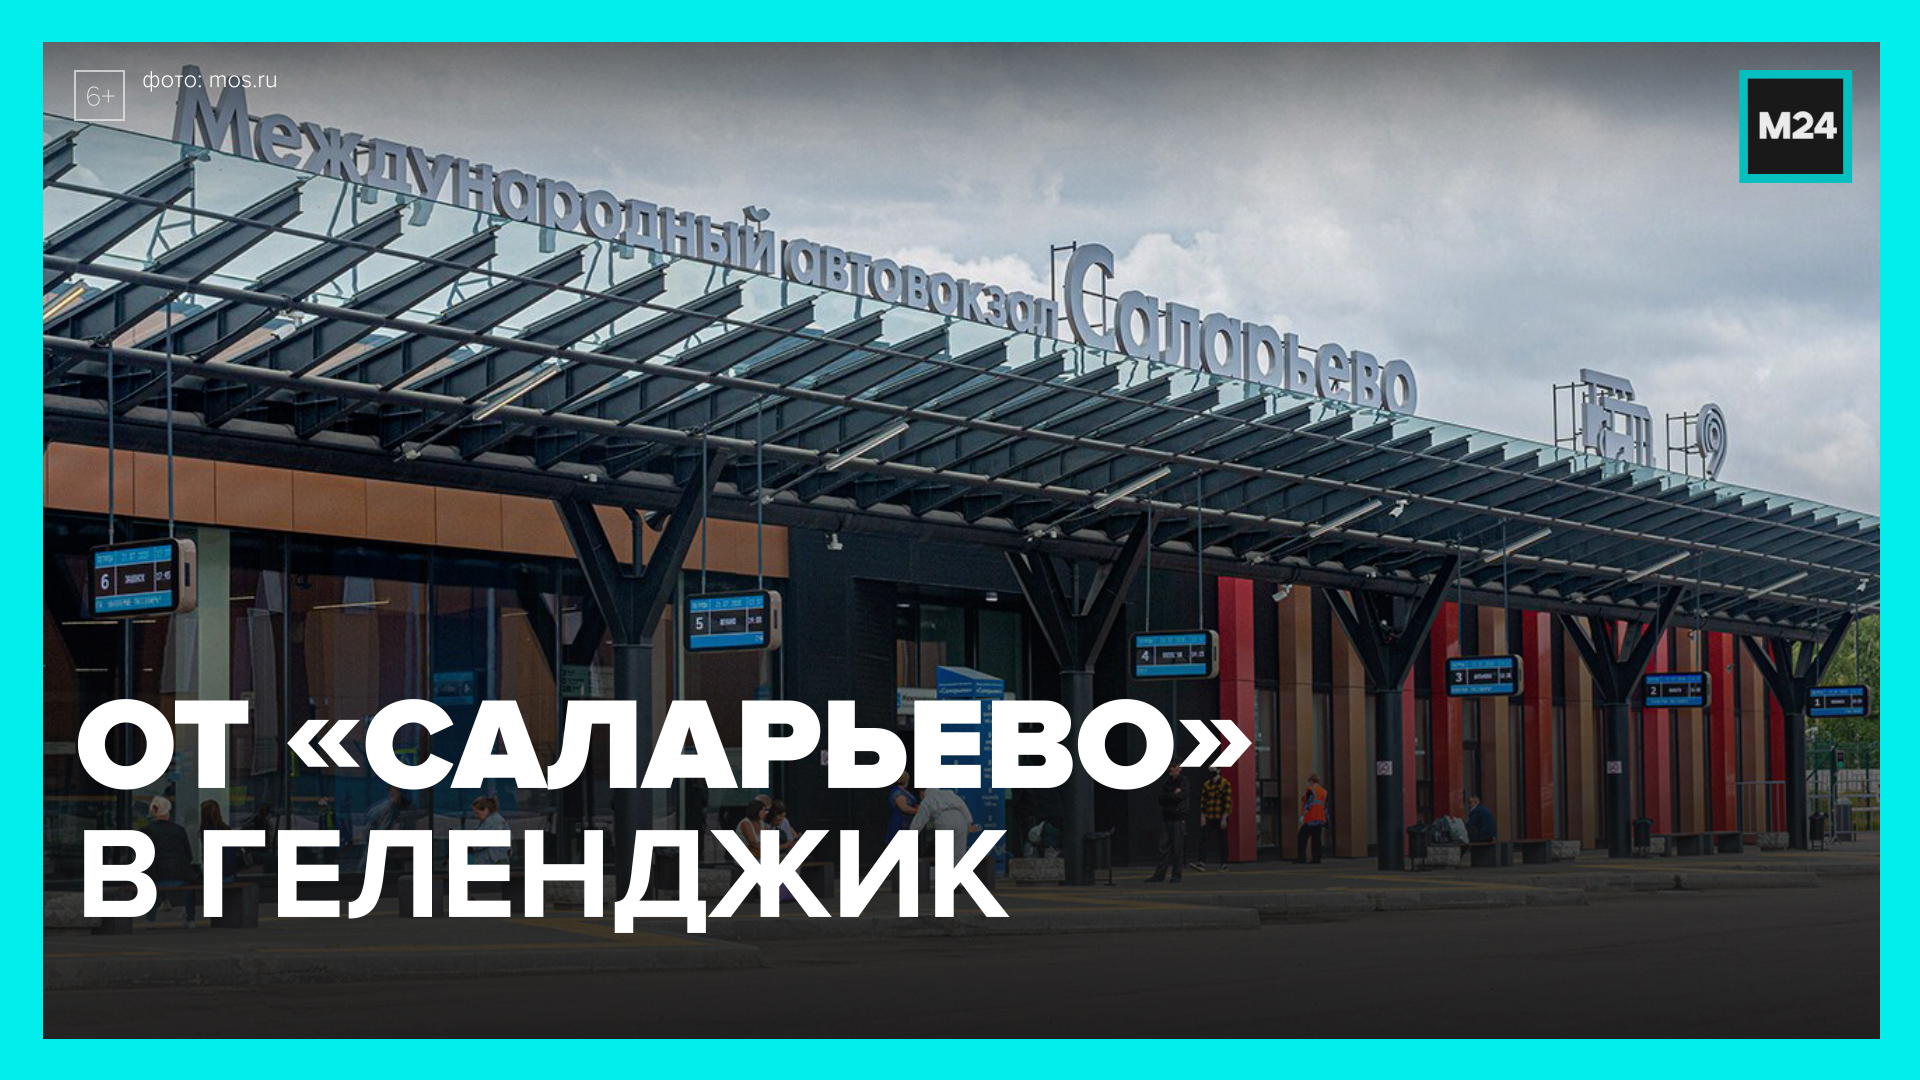 Междугородный автовокзал саларьево. Автовокзал Саларьево Москва. Метро Саларьево автовокзал. Международный автовокзал Саларьево.